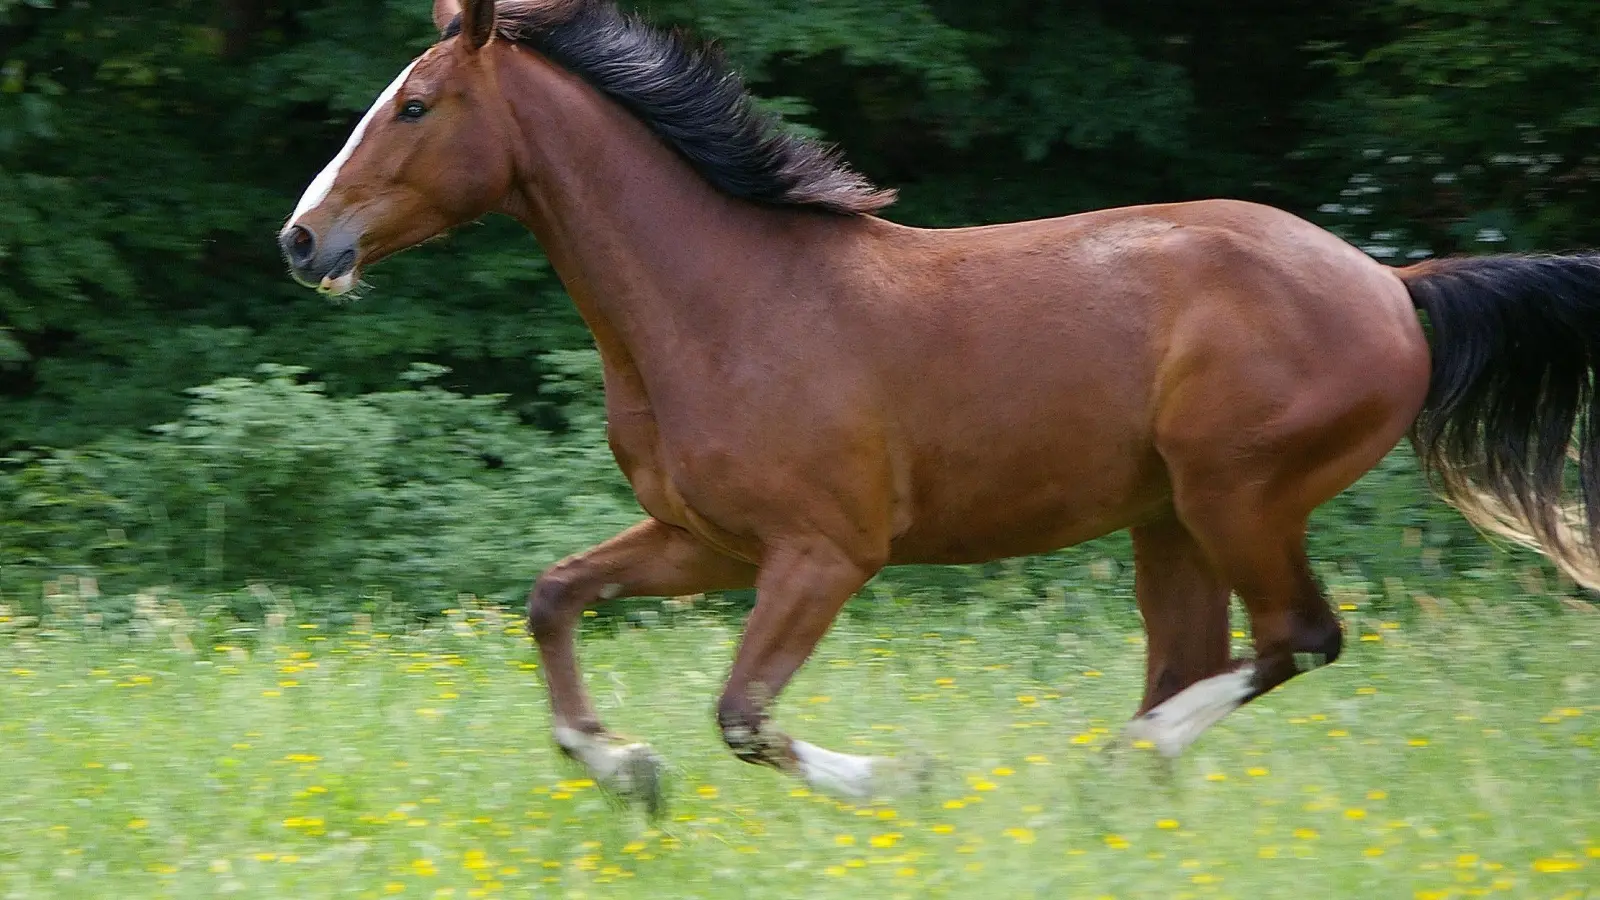 <b>Ein Pferd ist am Donnerstag</b> vor seiner Halterin davongelaufen. Die Frau hatte es massieren wollen. (Foto: Pixabay)